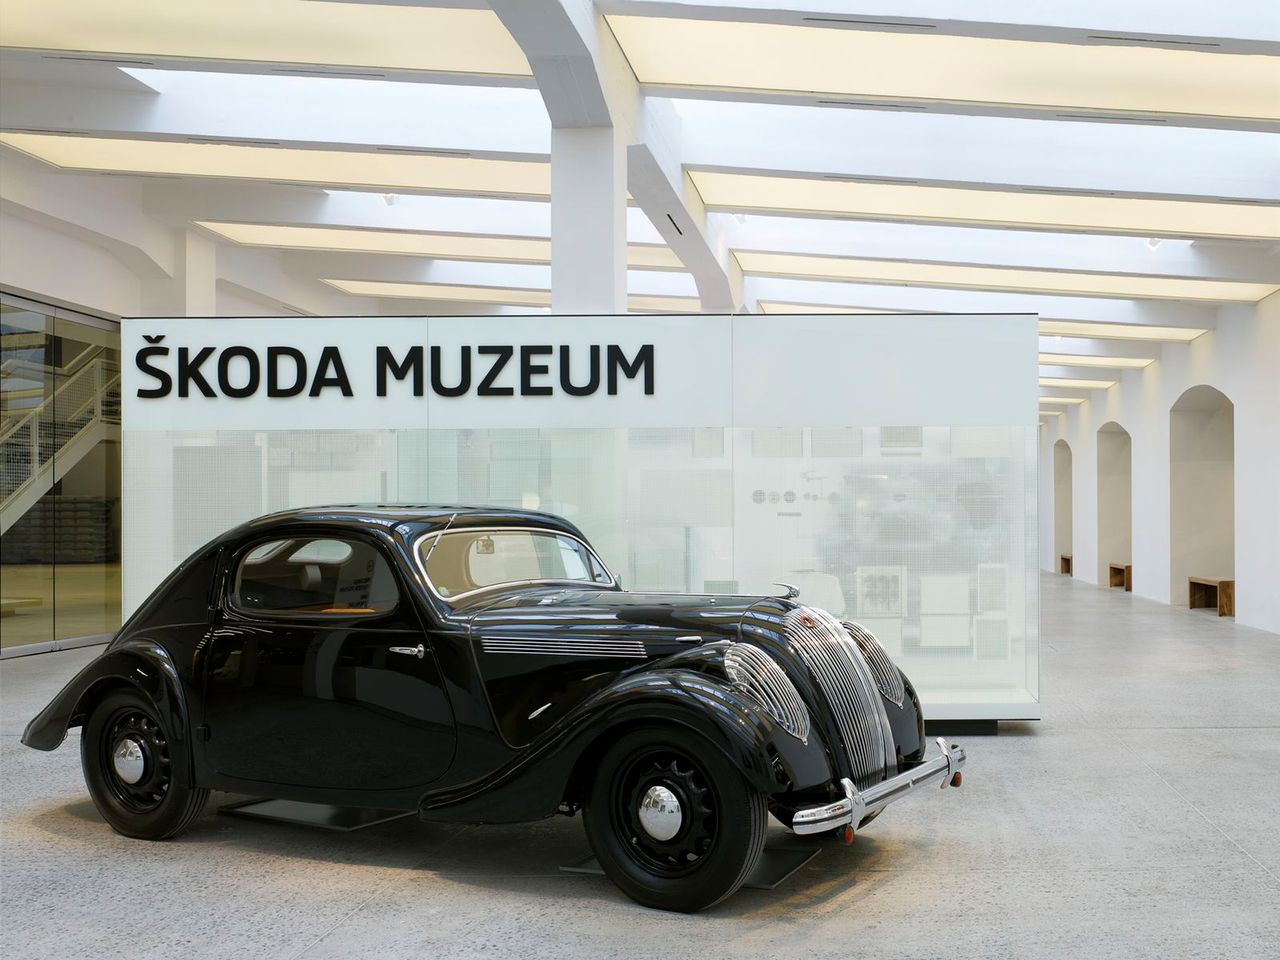 Odnowione Muzeum Škody – ewolucja, tradycja i precyzja